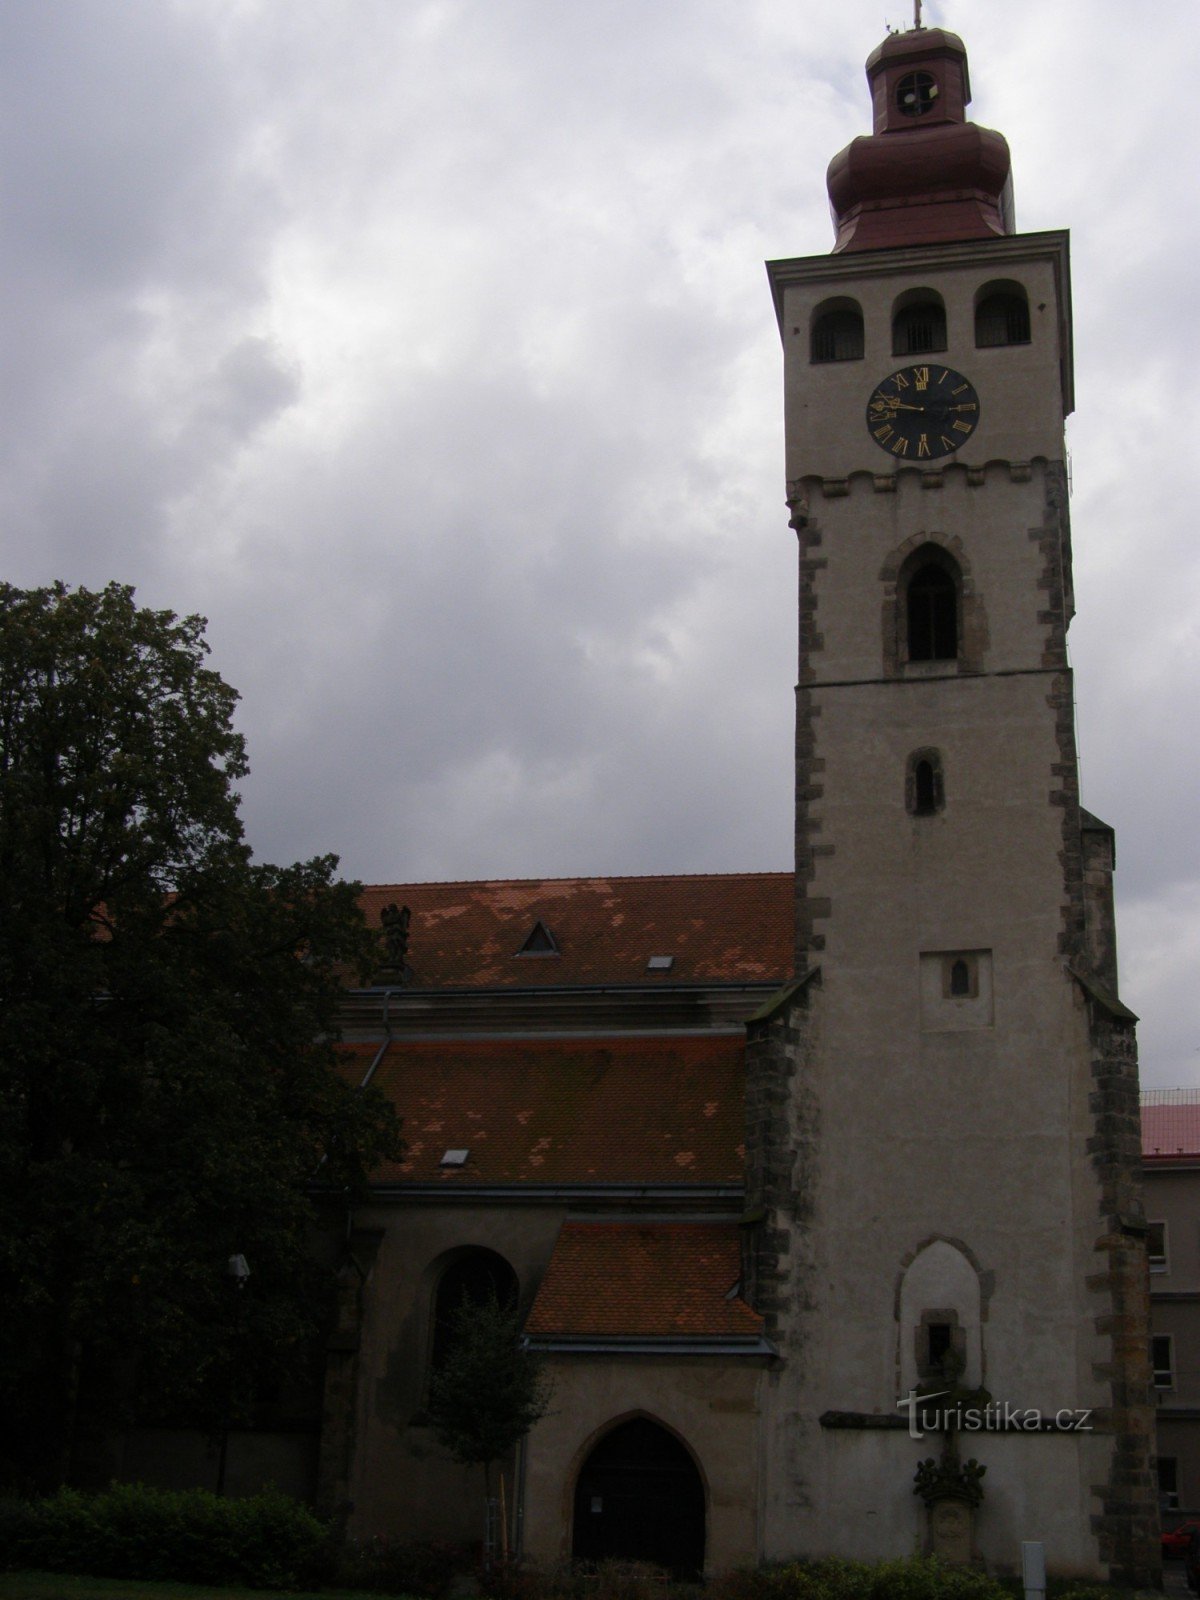 Nový Bydžov - cerkev sv. Lovrenca